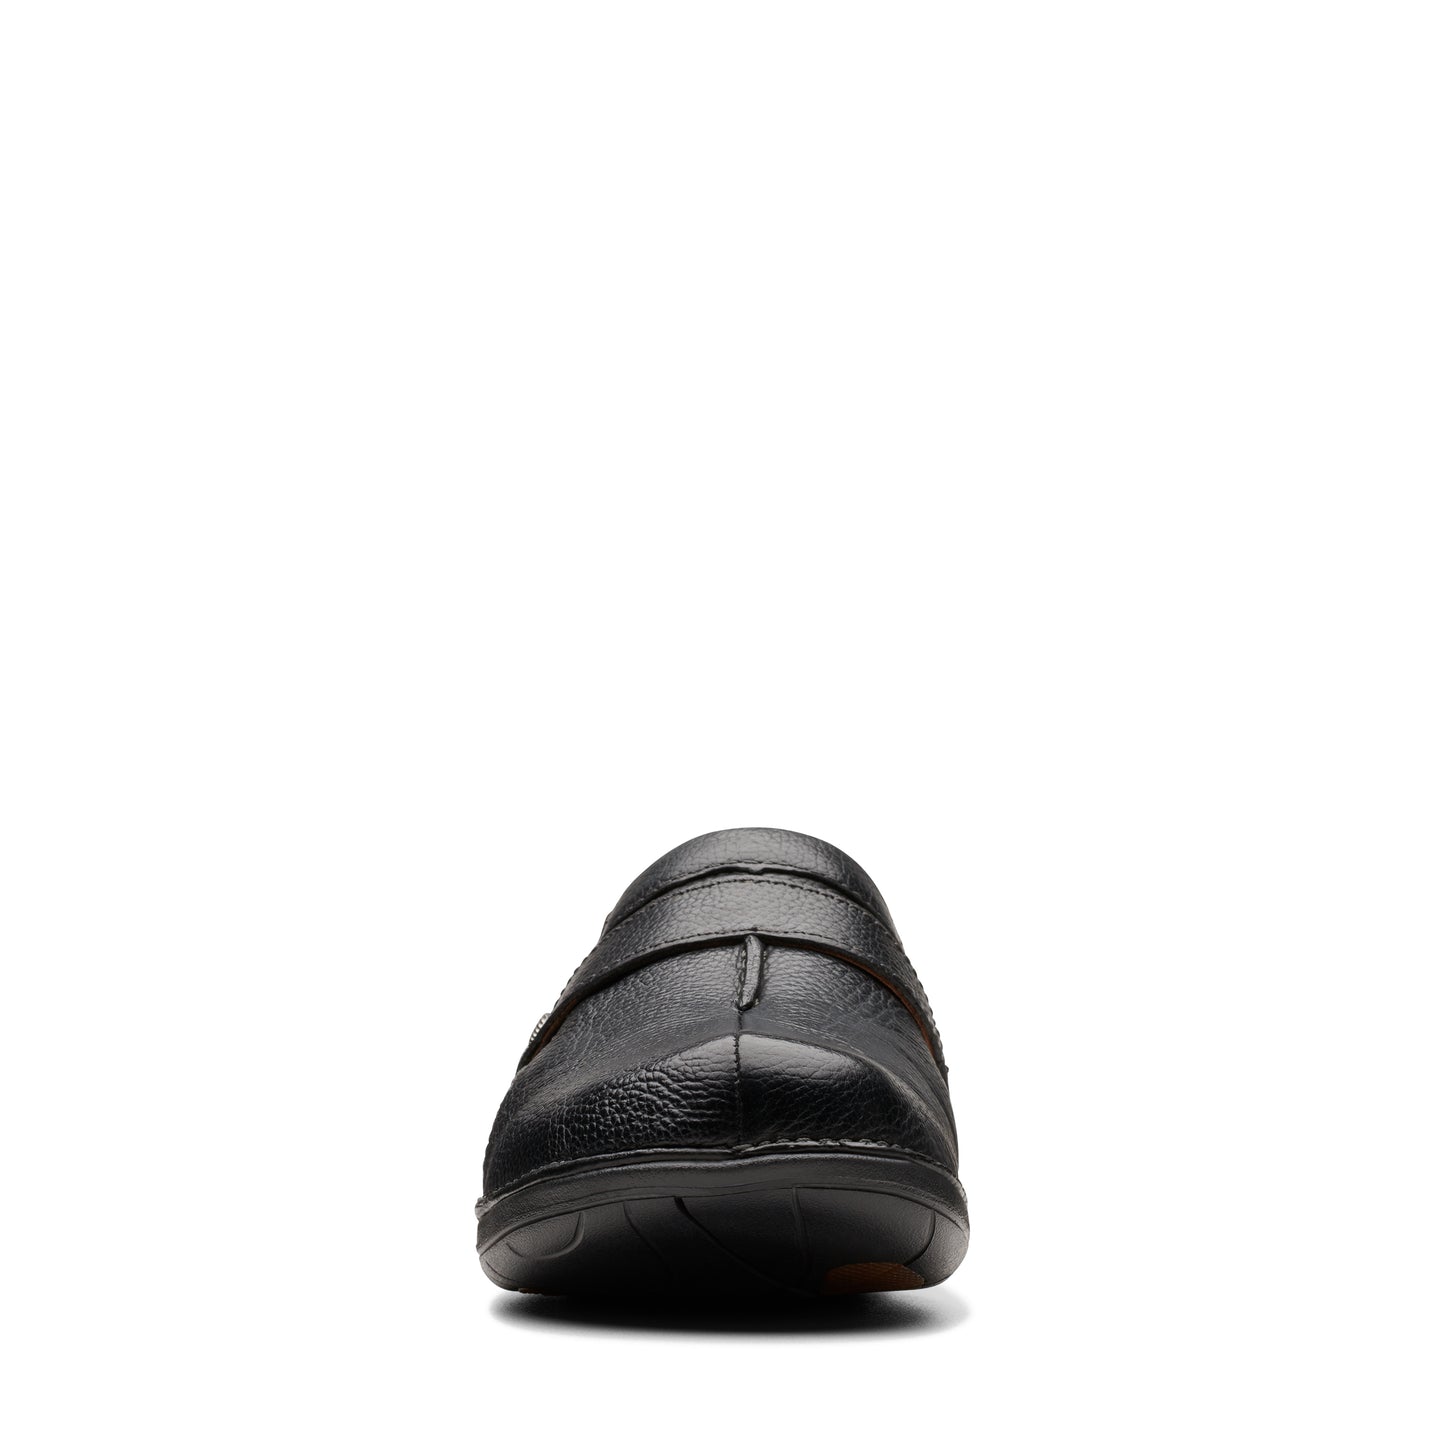 Unloop Ease Black Leather